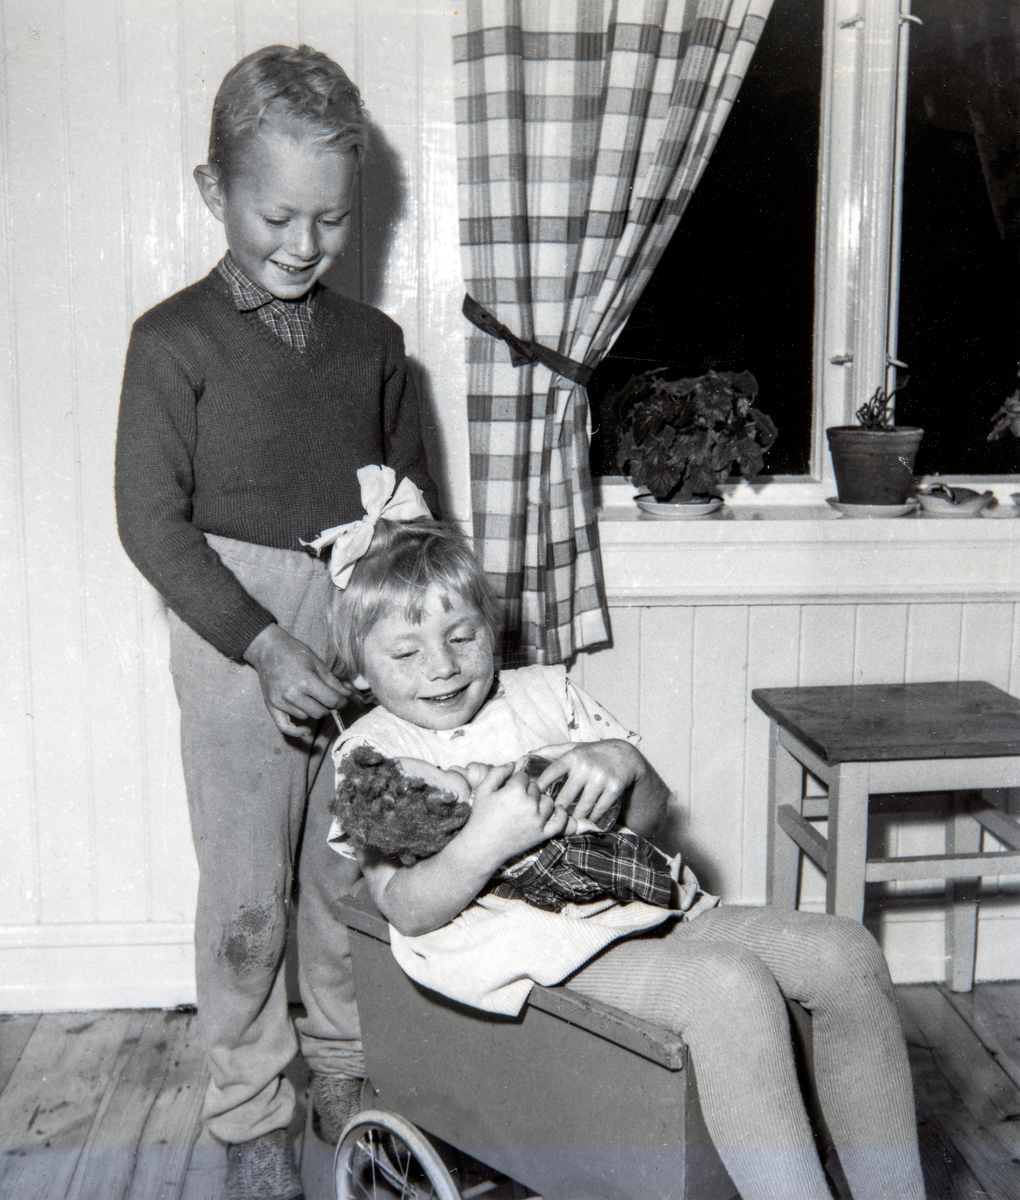 Søsken lek. Søsknene Torkel Frydenlund (f: 09.09.1951) og Eli Frydenlund ( f: 23.09.1954) i lek med dukke og dukkevogn hjemme i Vallset.